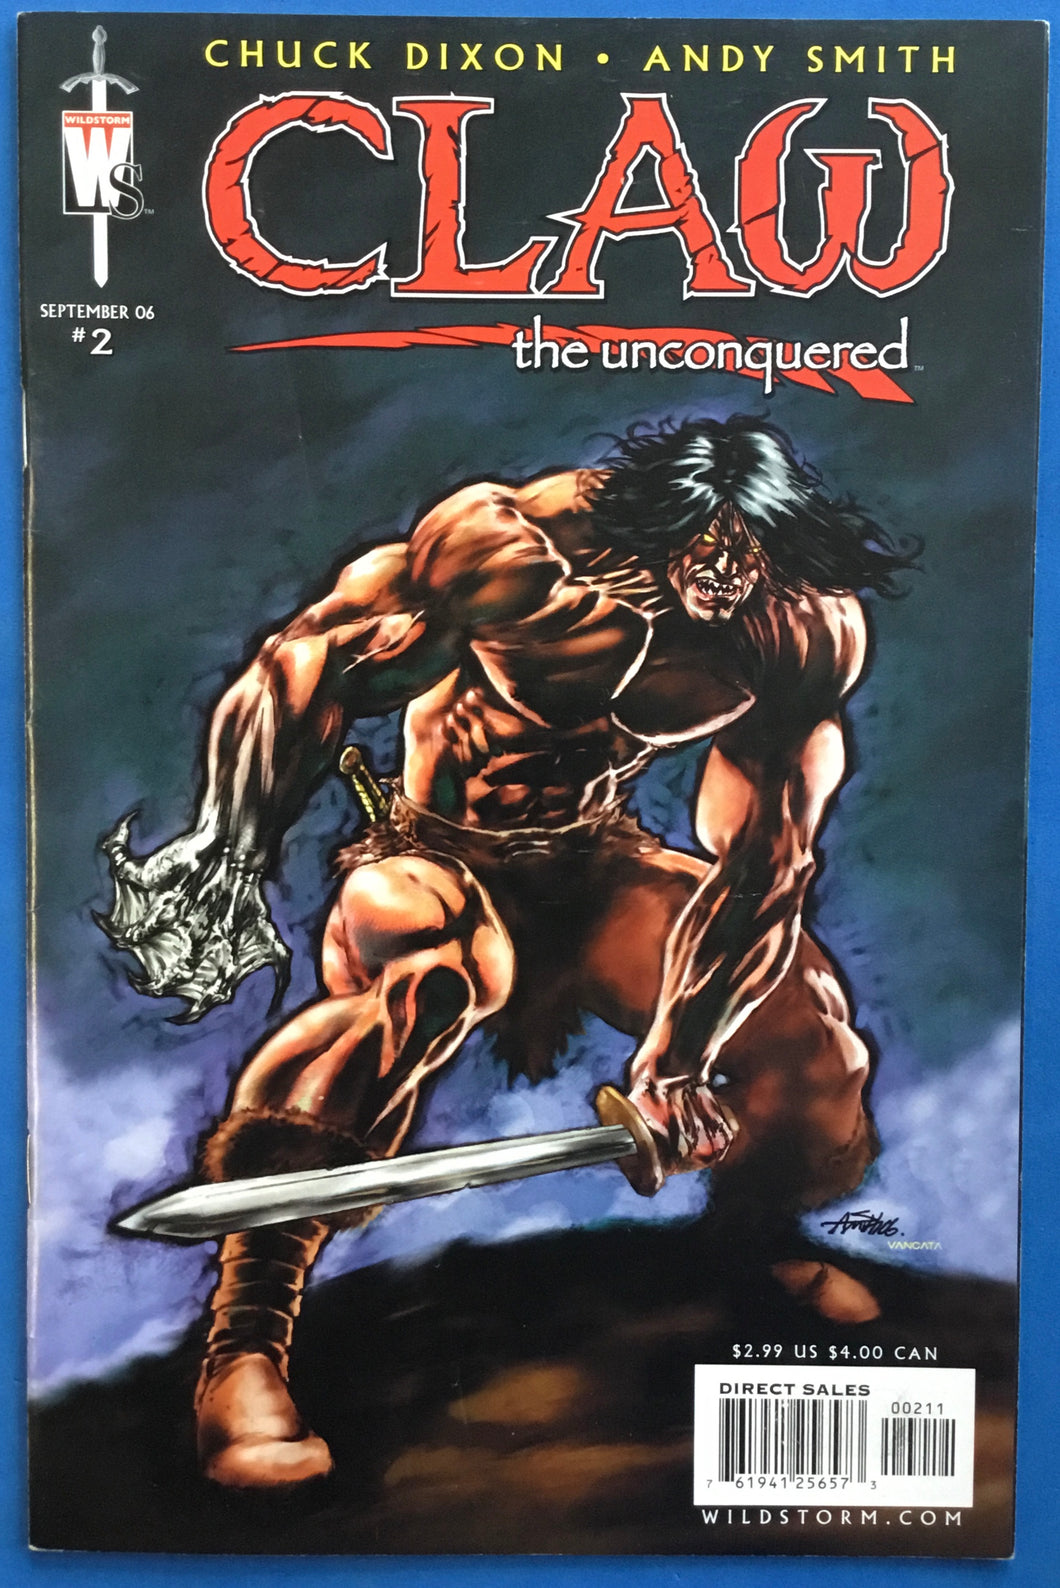 Claw the Unconquered No. #2 2006 Wildstorm Comics